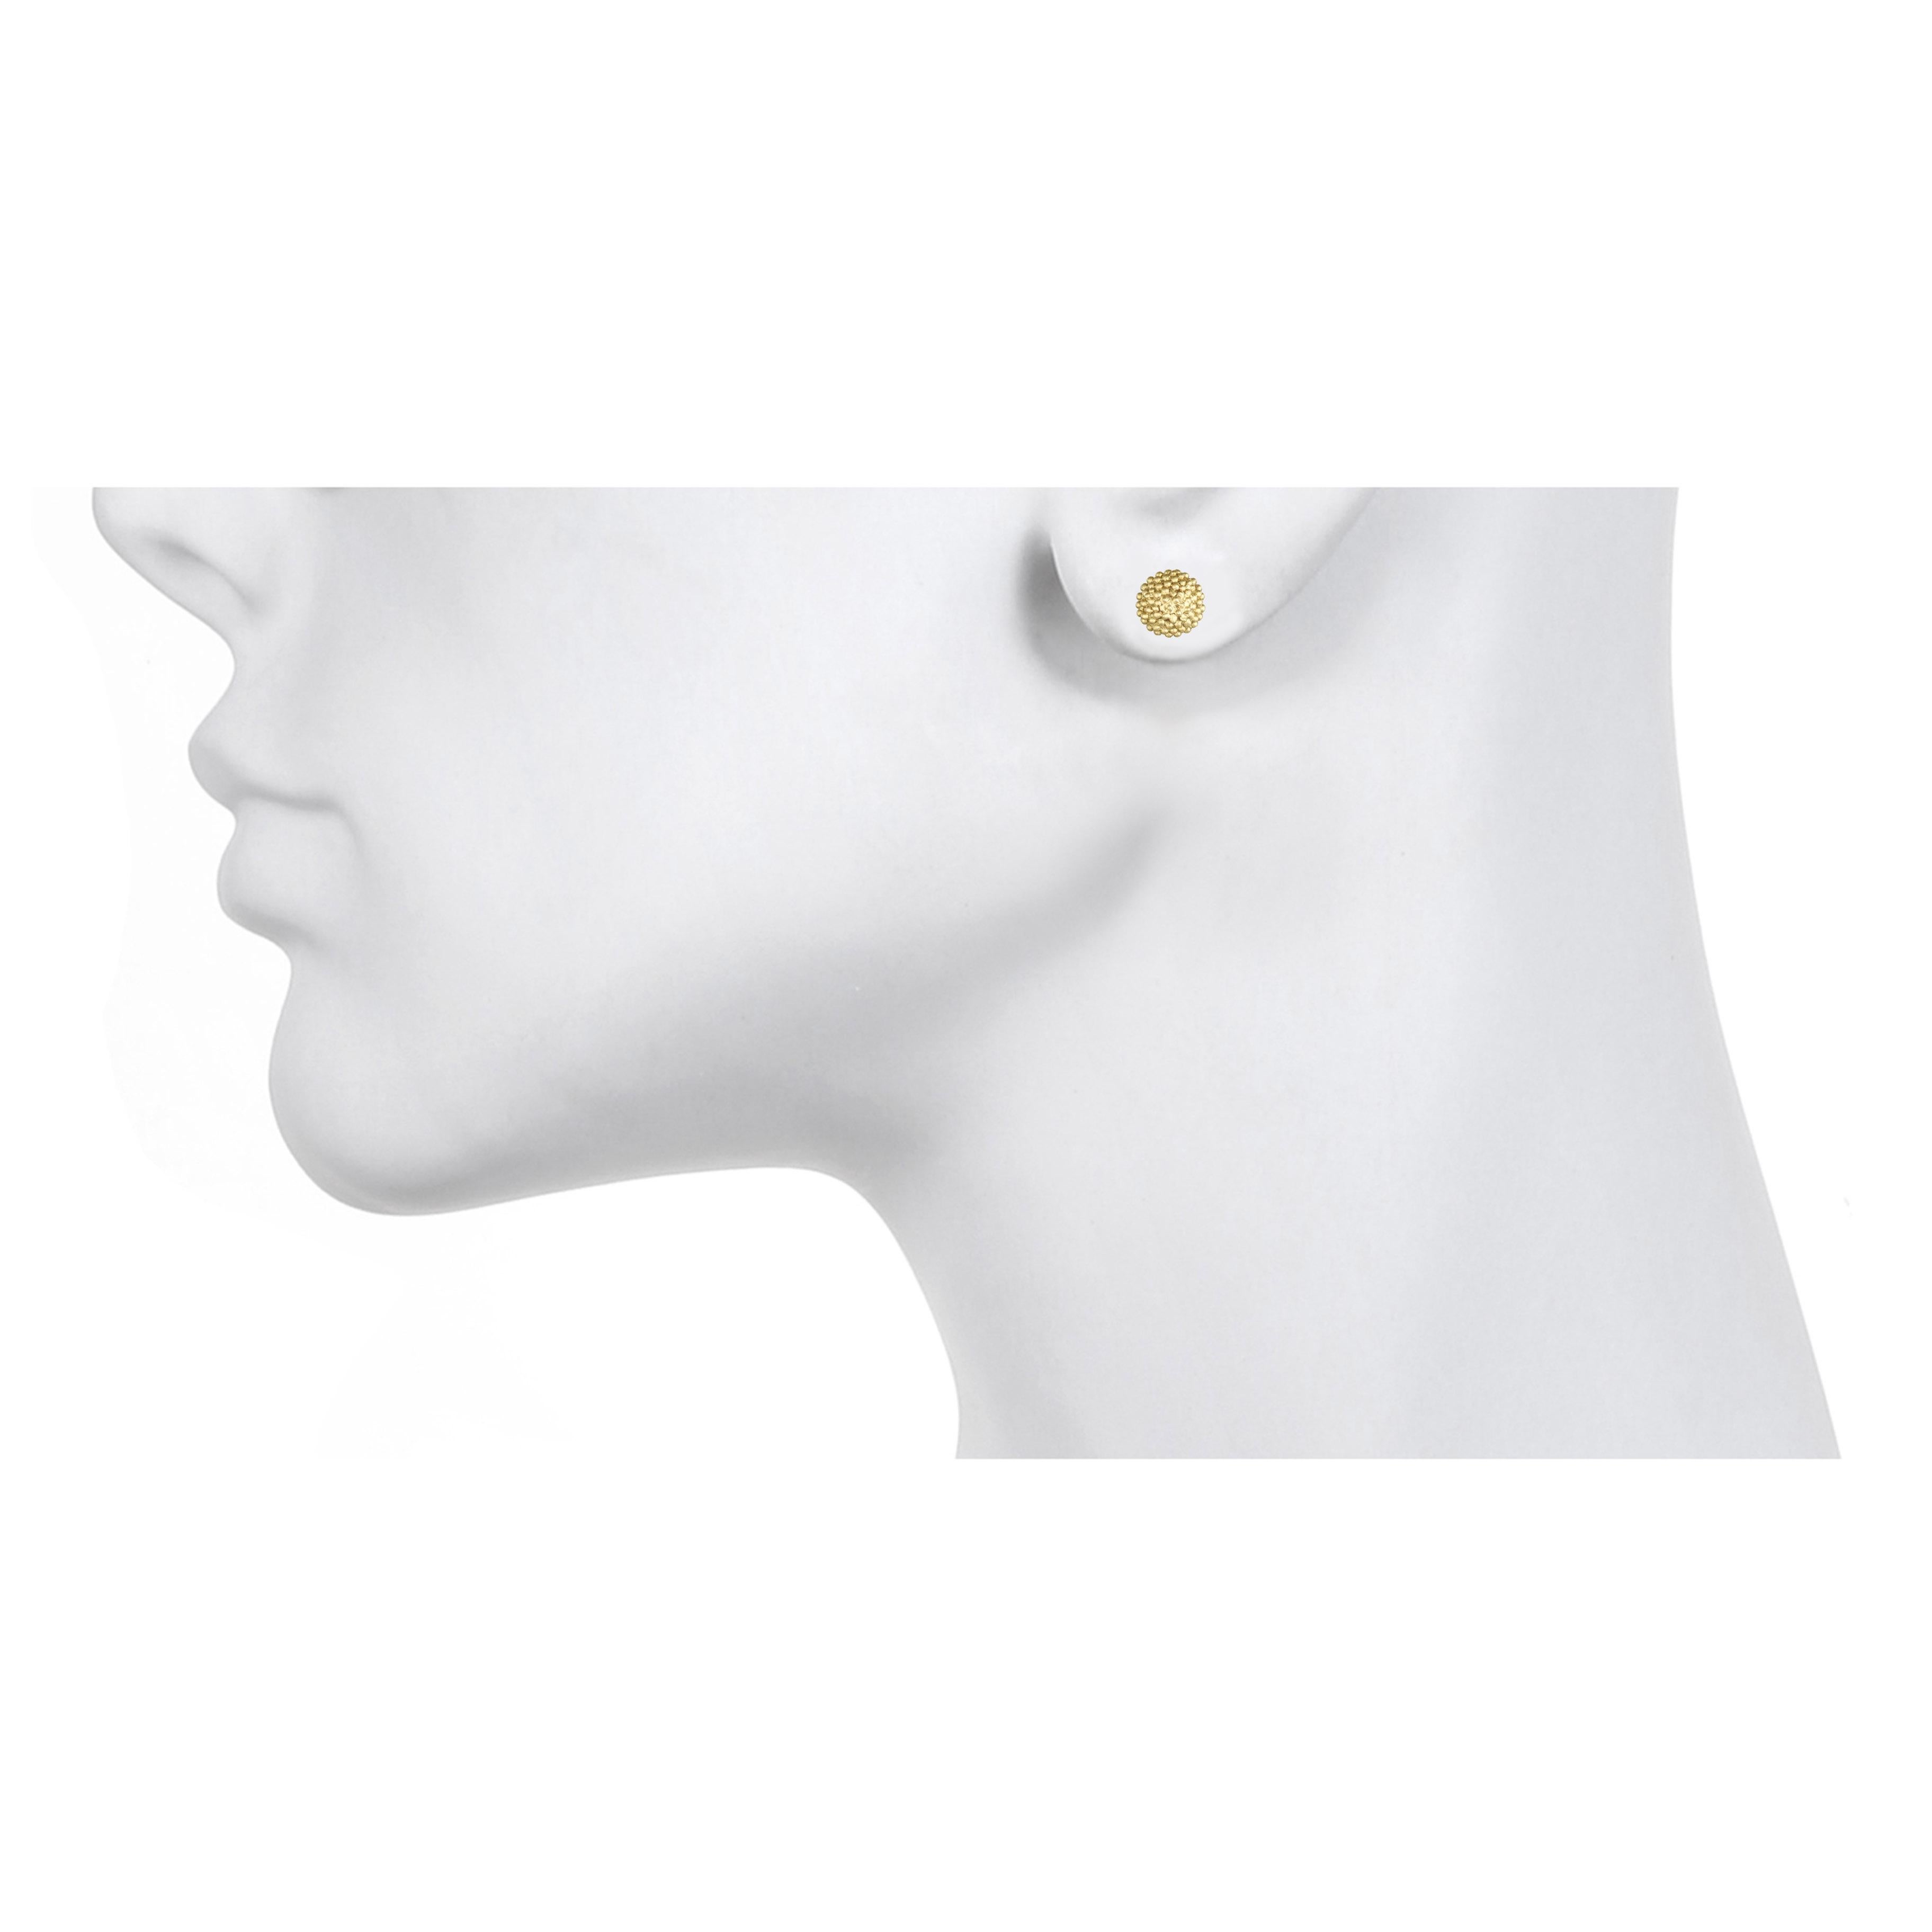 Une variante des boucles d'oreilles classiques en or.  Le clou en or 18 carats de Faye Kim est légèrement bombé et comporte de minuscules perles de granulation qui lui confèrent texture et intérêt visuel.  Idéal pour une utilisation